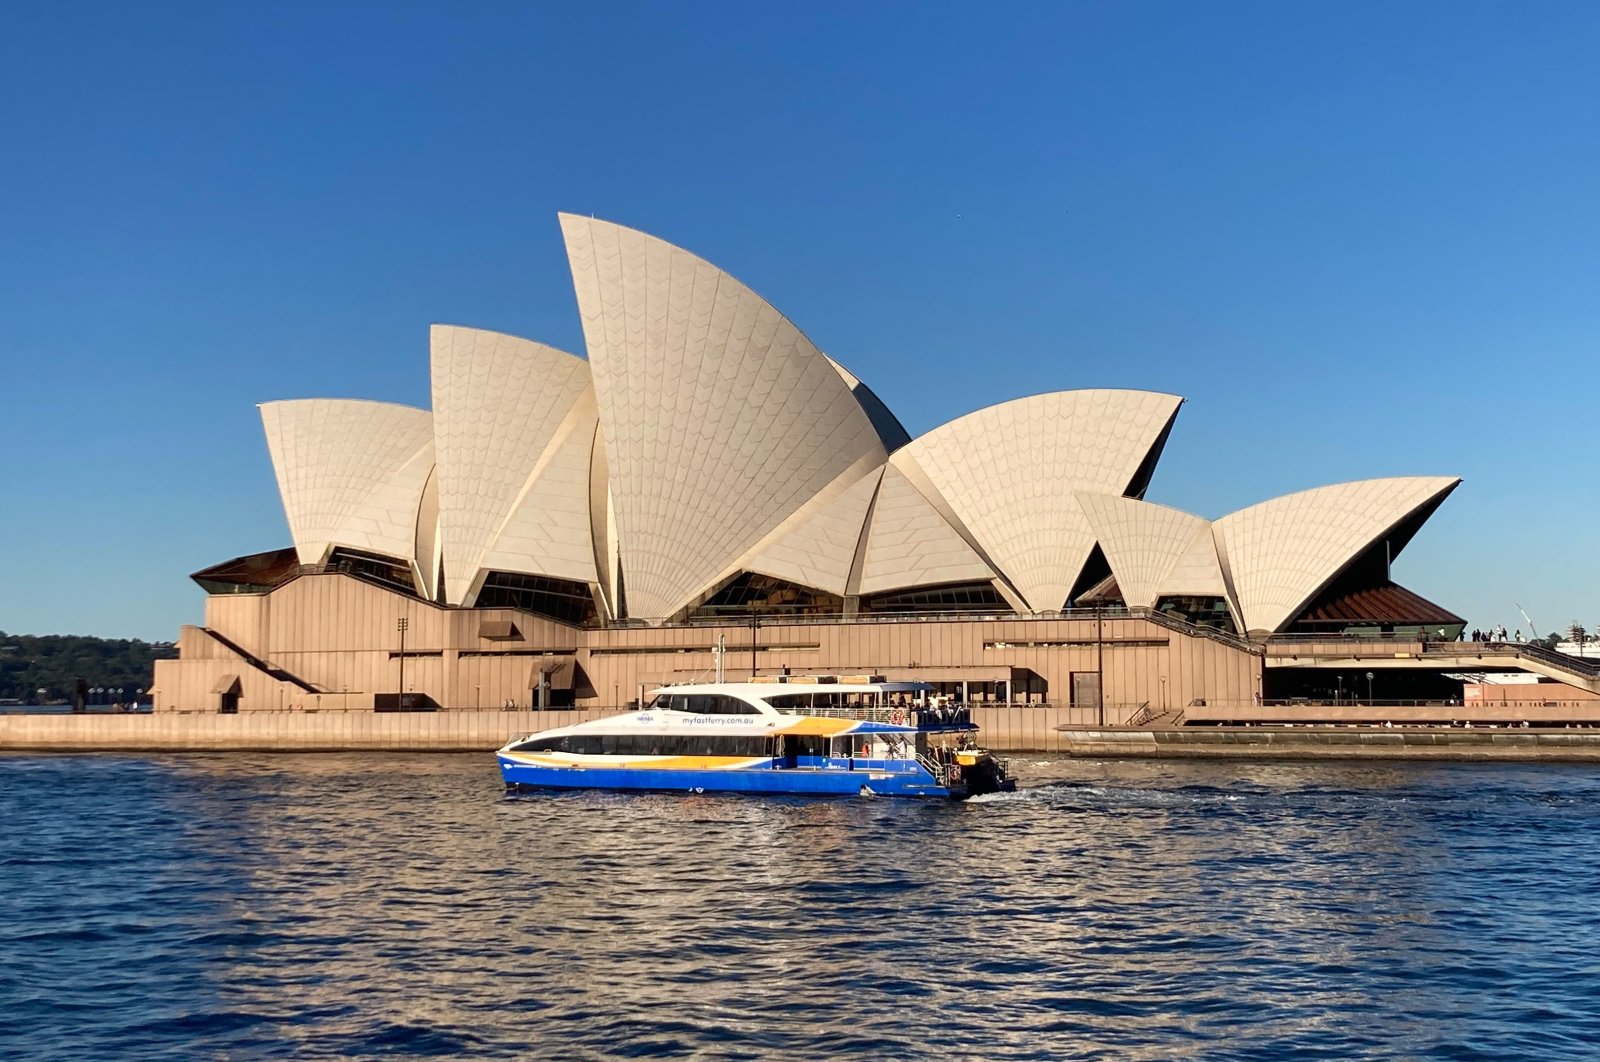 Sydney Opera House merayakan ulang tahun ke-50 dengan serangkaian acara